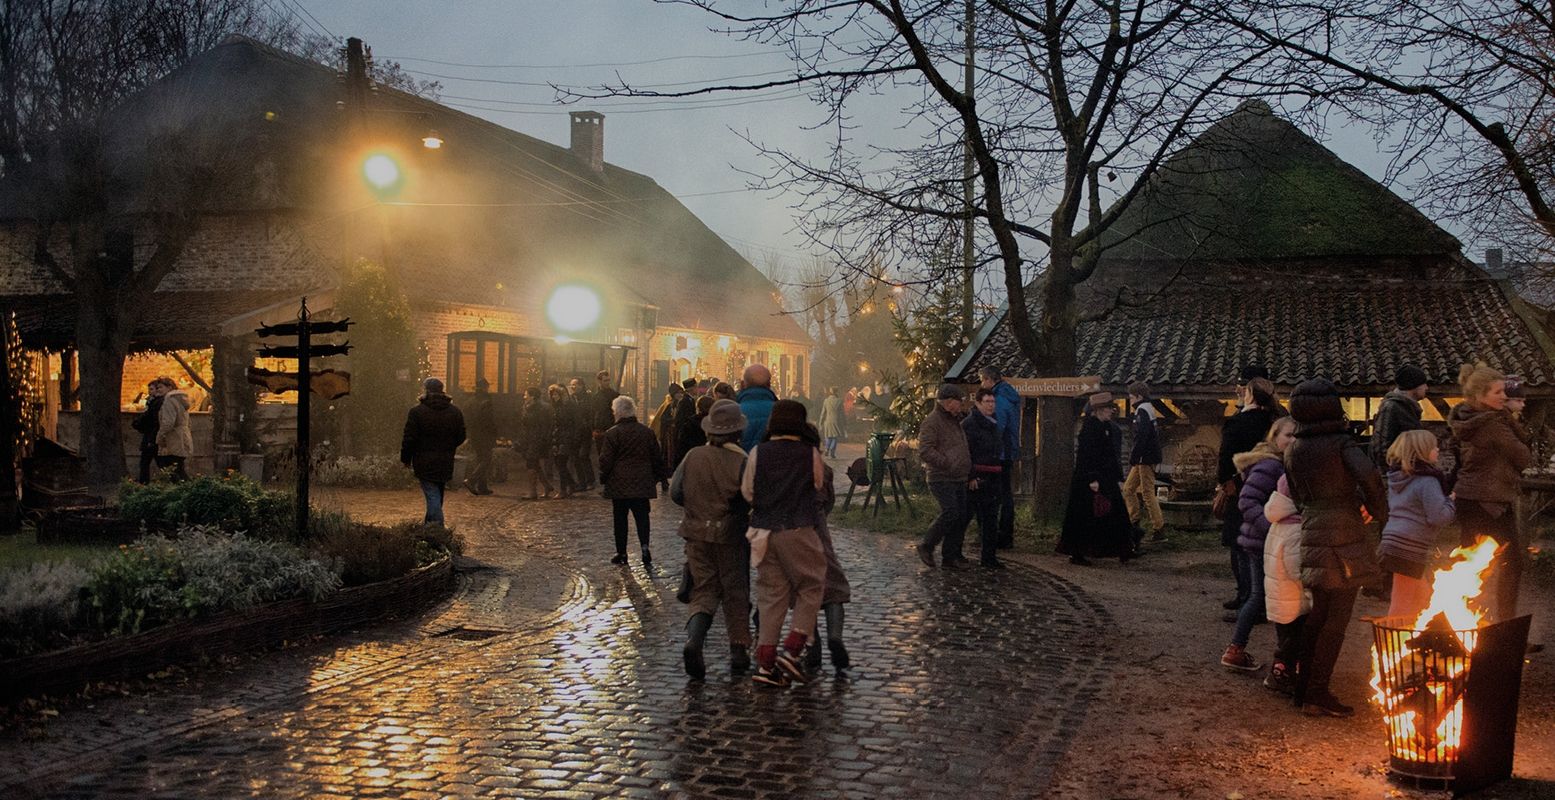 Nostalgische kerst in het Anton Pieck kerstdorp van Openluchtmuseum Eynderhoof. Foto: Johan Horst